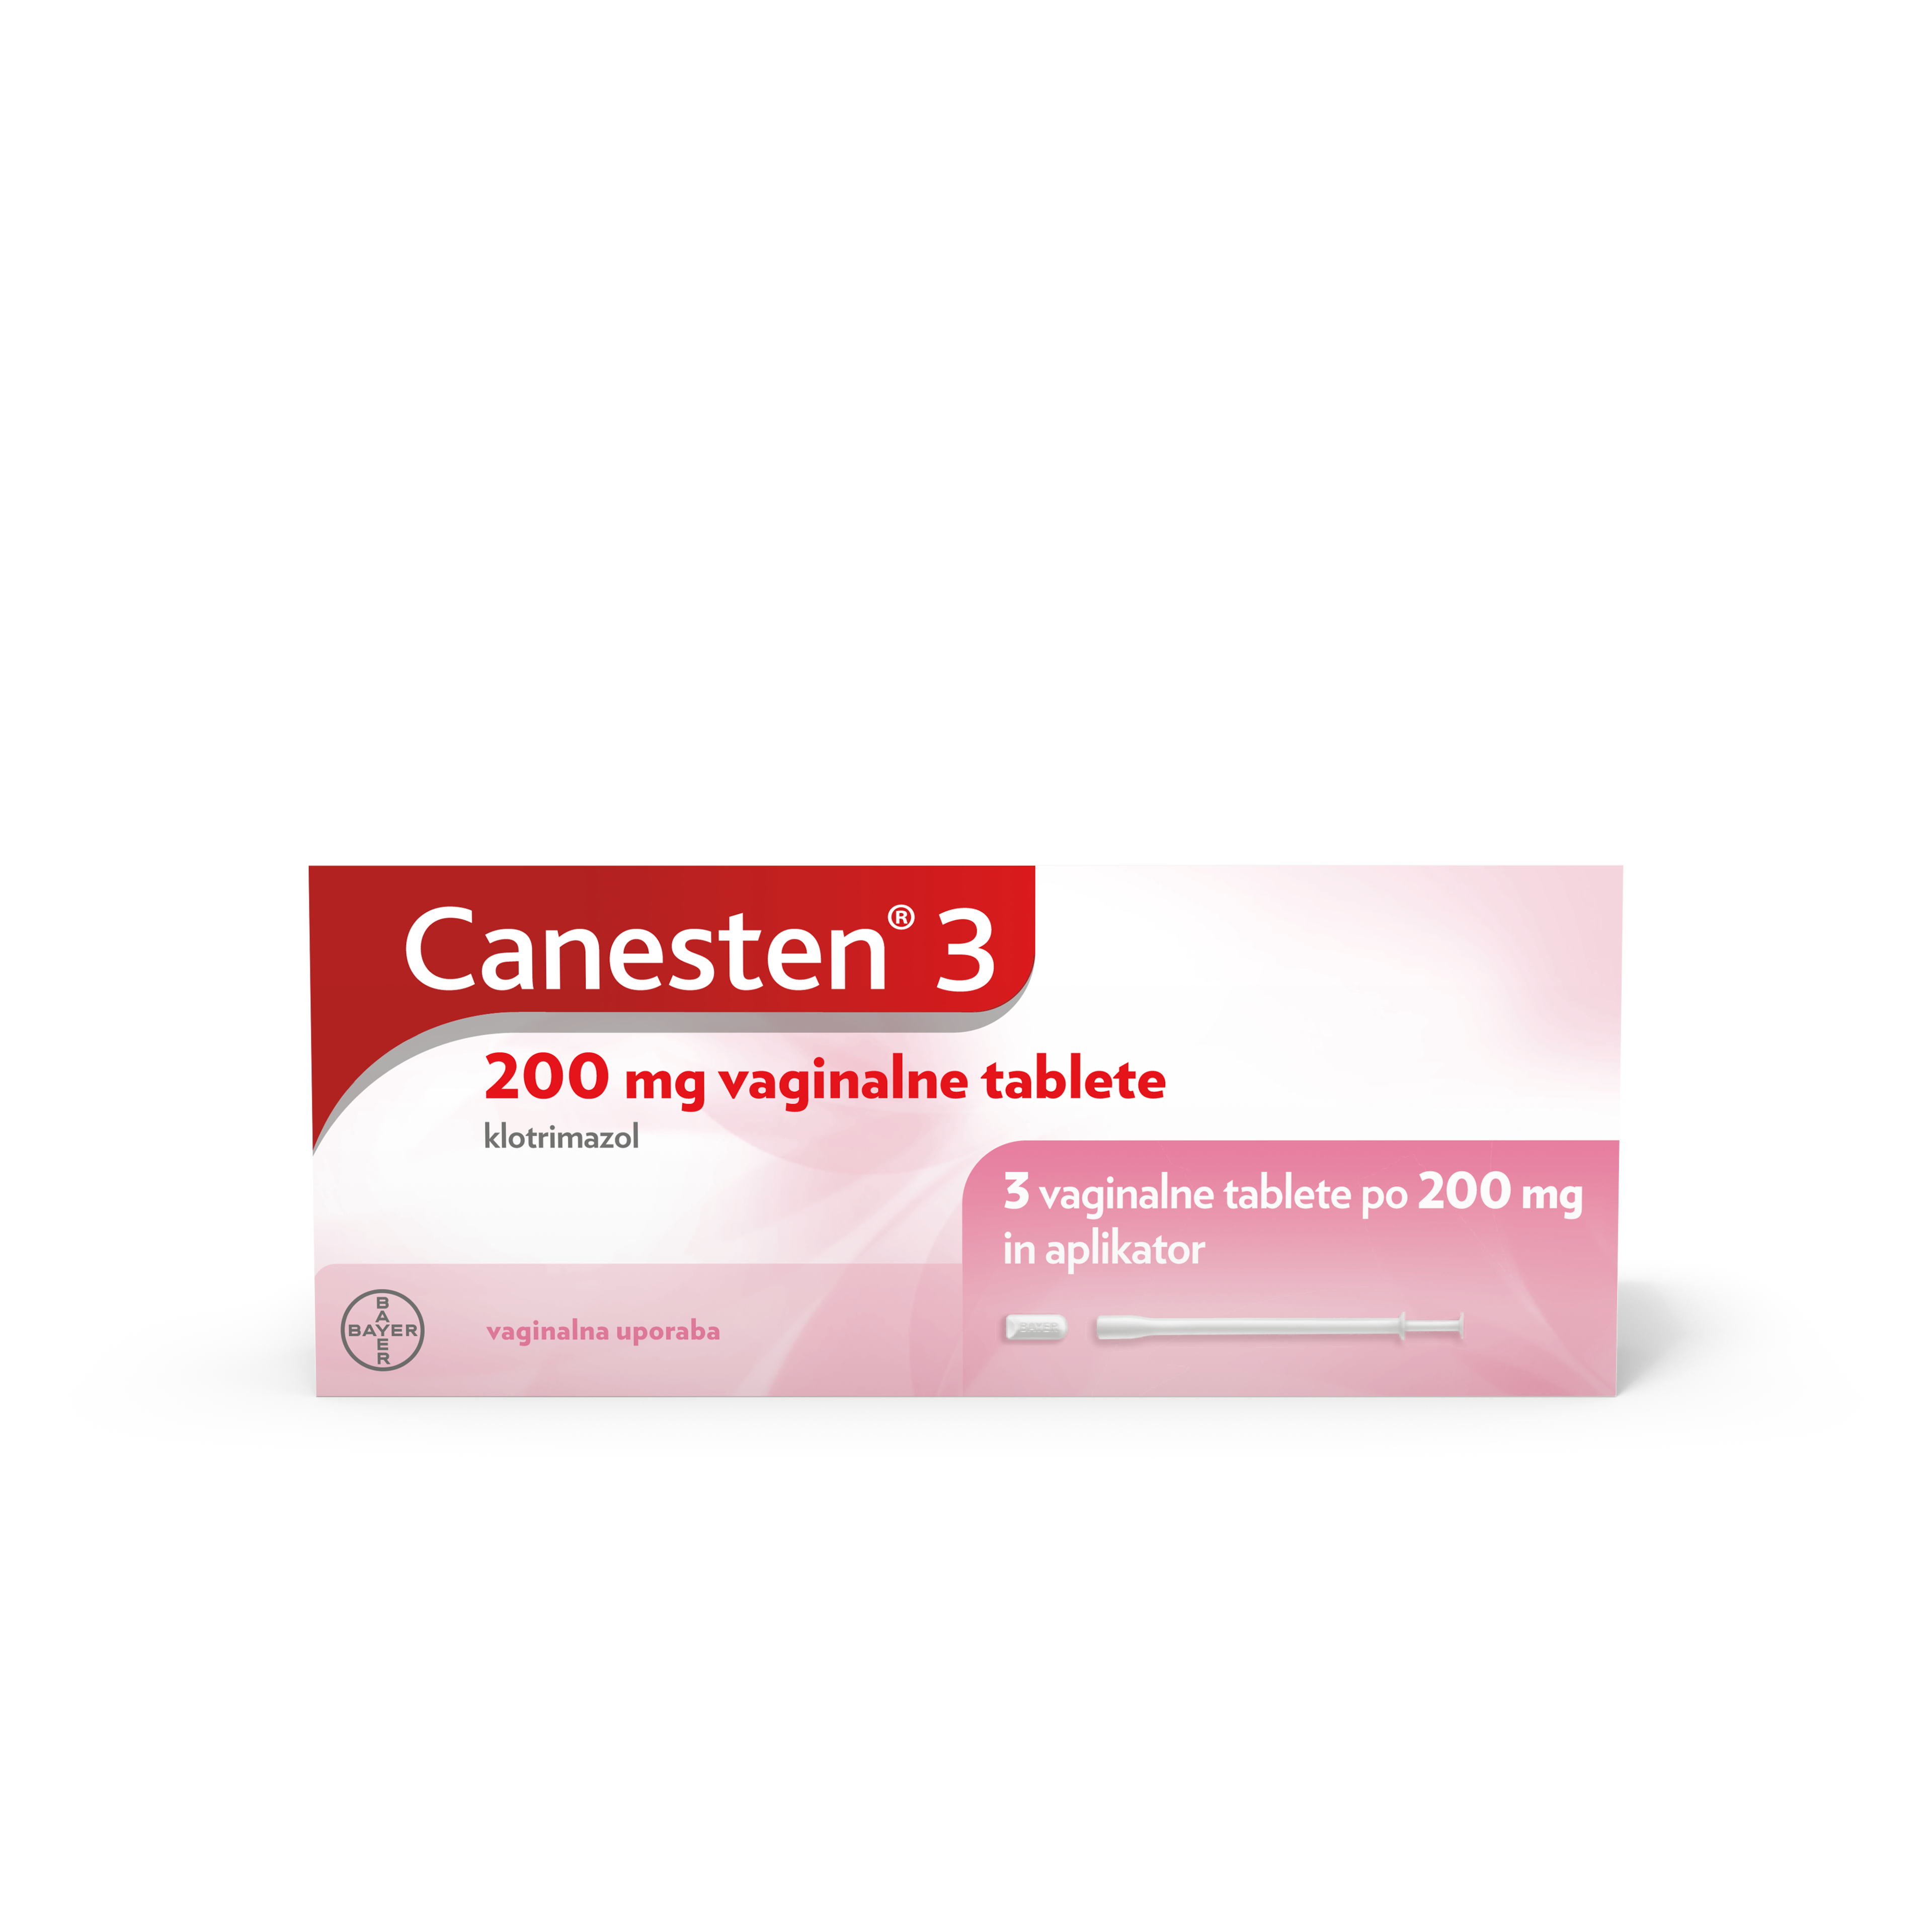 Canesten® 3 200 mg tableta vaginale